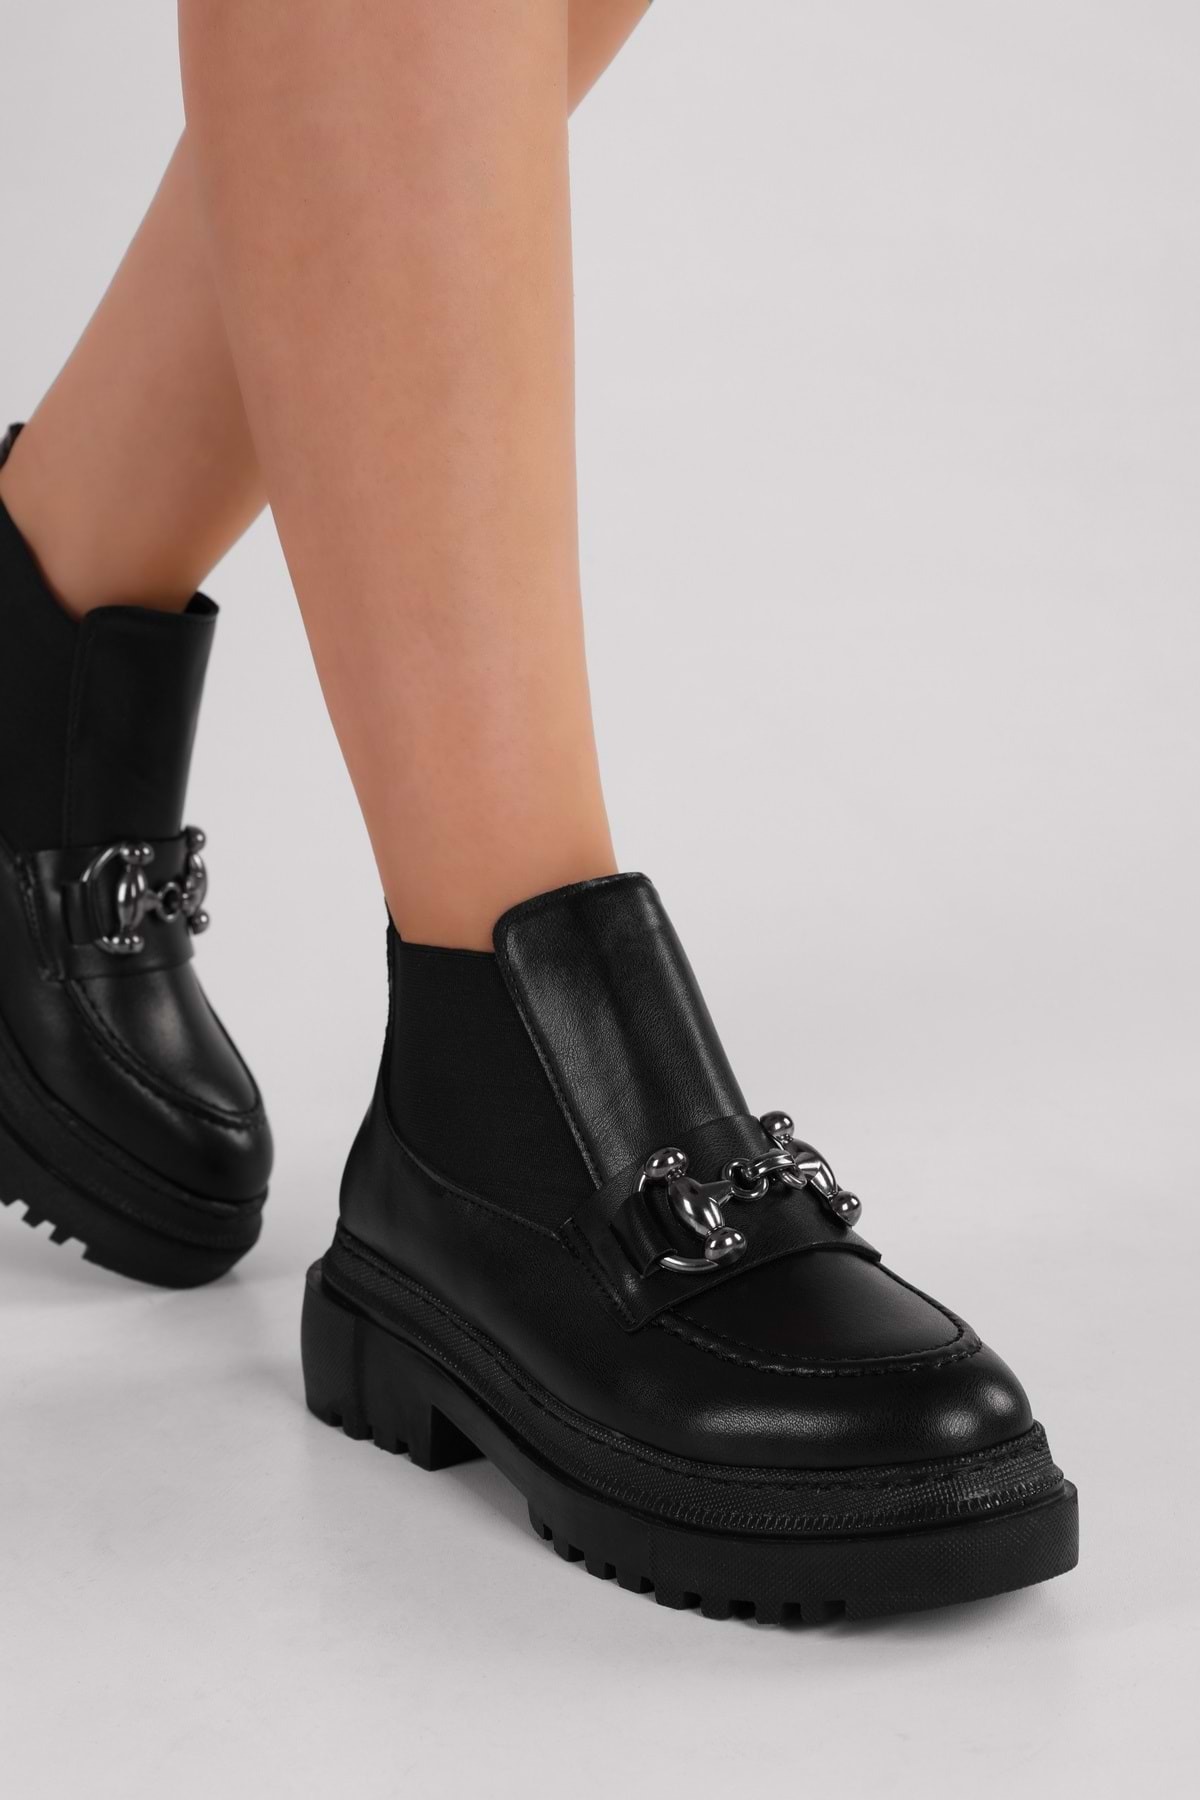 Levně Shoeberry Women's Tastor Black Buckled Boots Loafer Black Skin